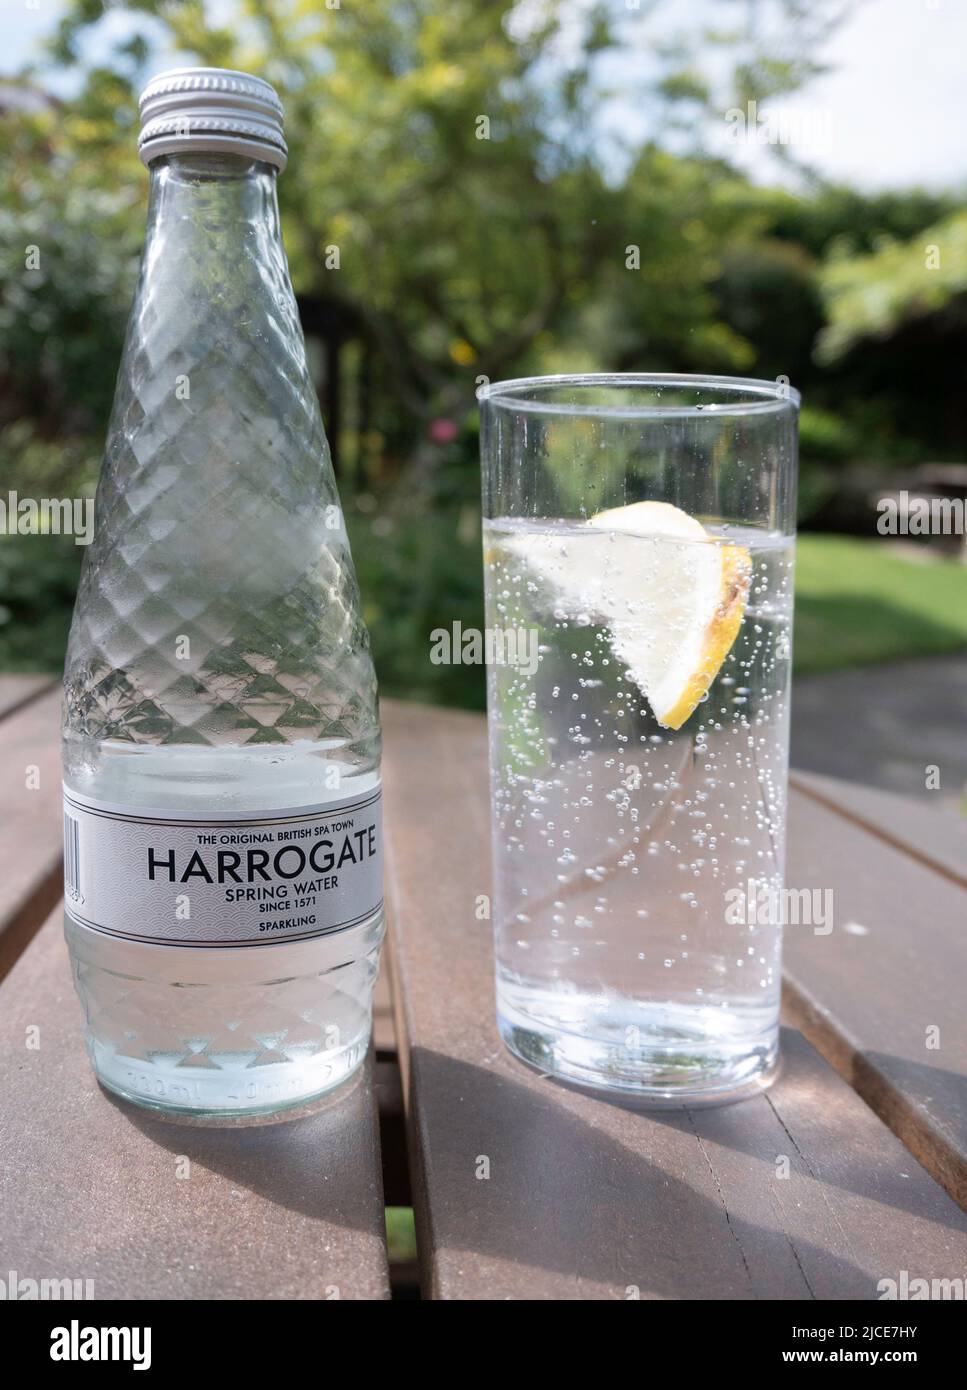 Harrogate Spa Sparkling acqua minerale, l'originale British Spa Town Spring acqua dal 1571 bottiglia e bicchiere con una fetta di limone su una linguetta esterna Foto Stock